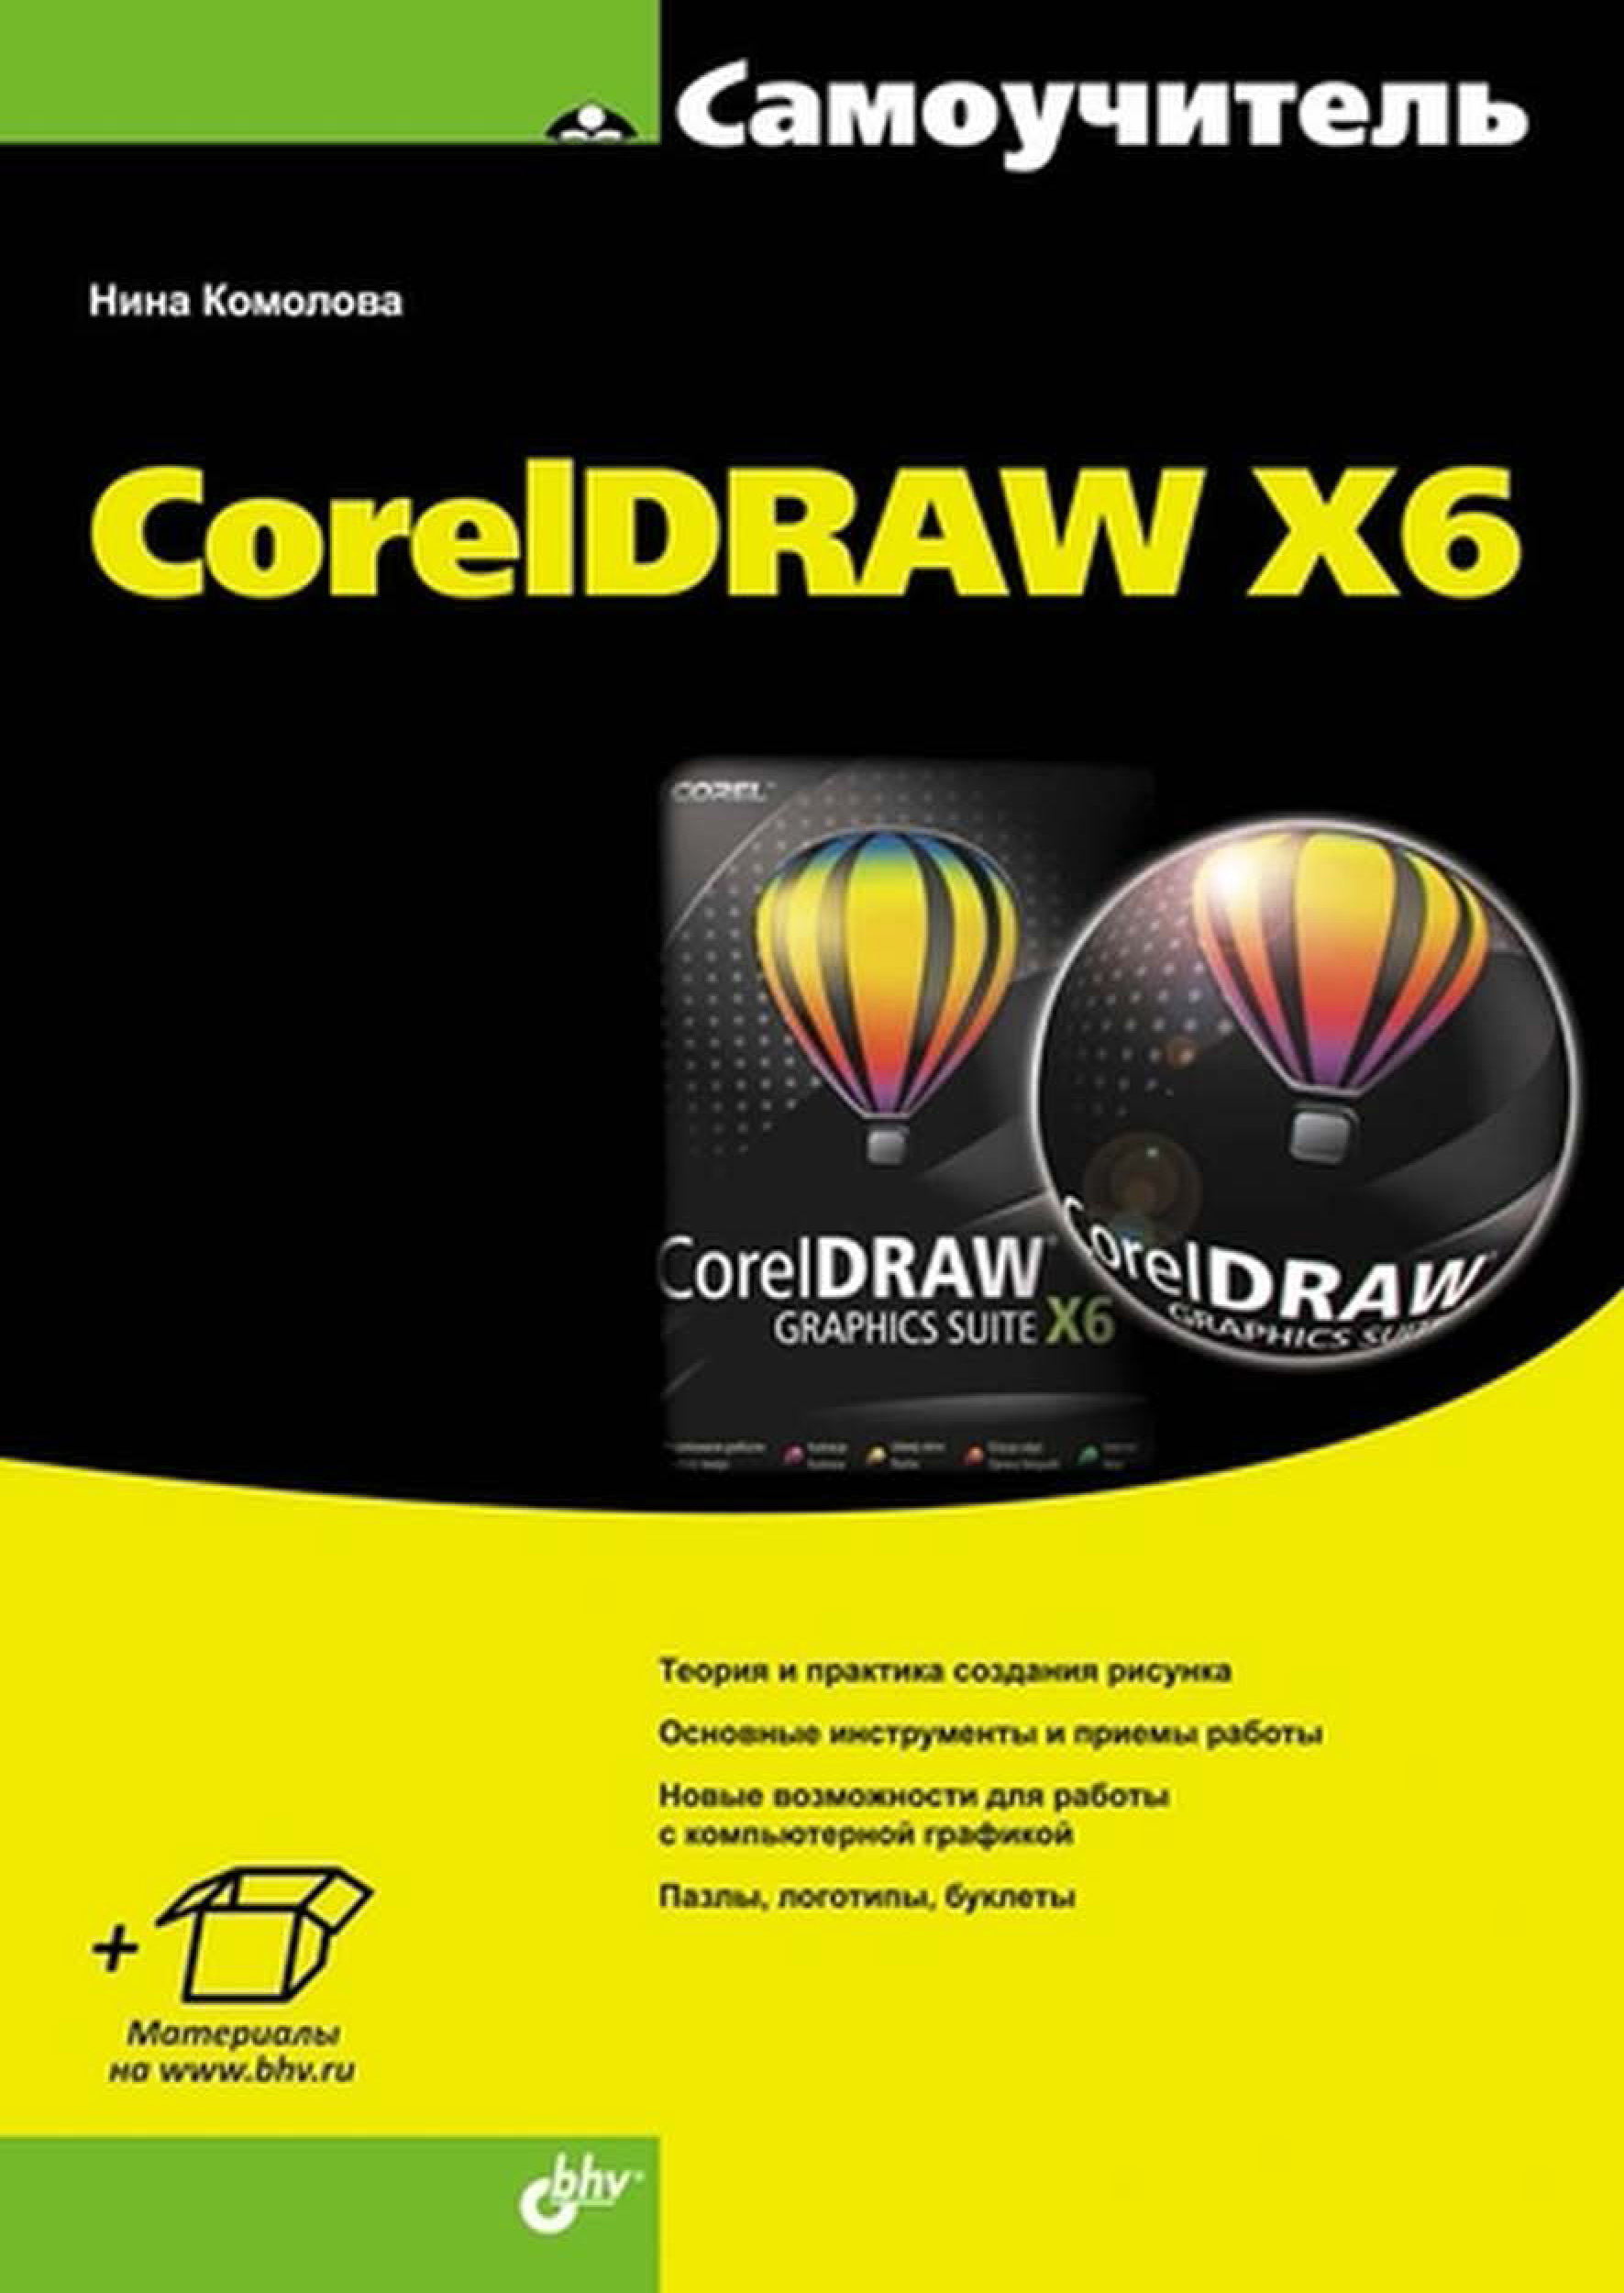 Книга Самоучитель (BHV) CorelDRAW X6 созданная Нина Комолова может относится к жанру программы, руководства. Стоимость электронной книги CorelDRAW X6 с идентификатором 7063312 составляет 215.00 руб.